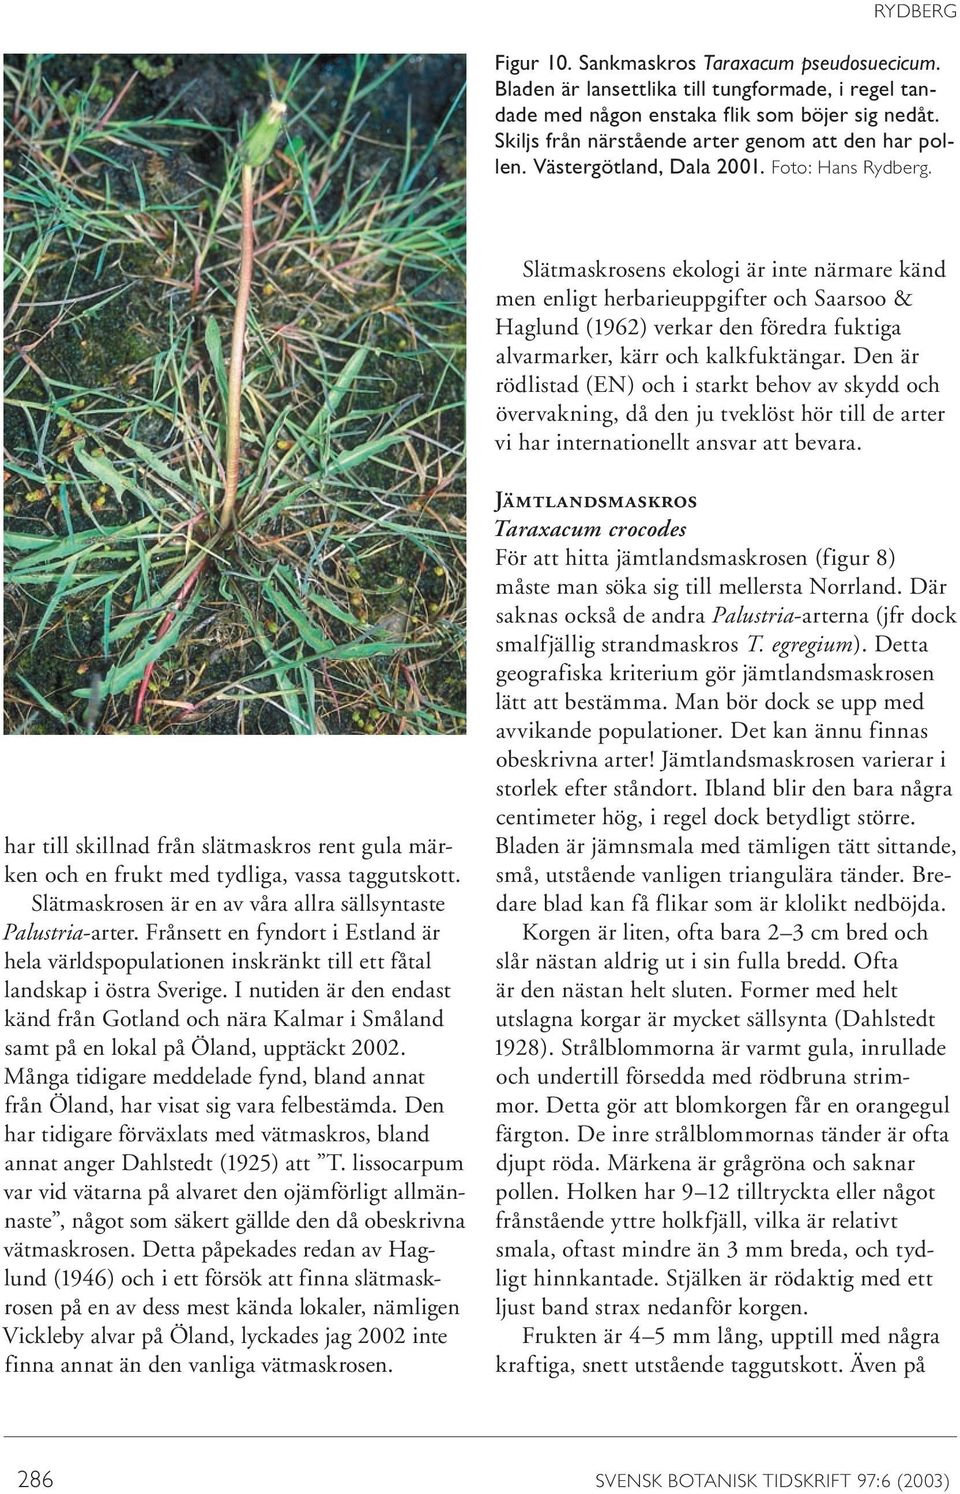 Slätmaskrosens ekologi är inte närmare känd men enligt herbarieuppgifter och Saarsoo & Haglund (1962) verkar den föredra fuktiga alvarmarker, kärr och kalkfuktängar.